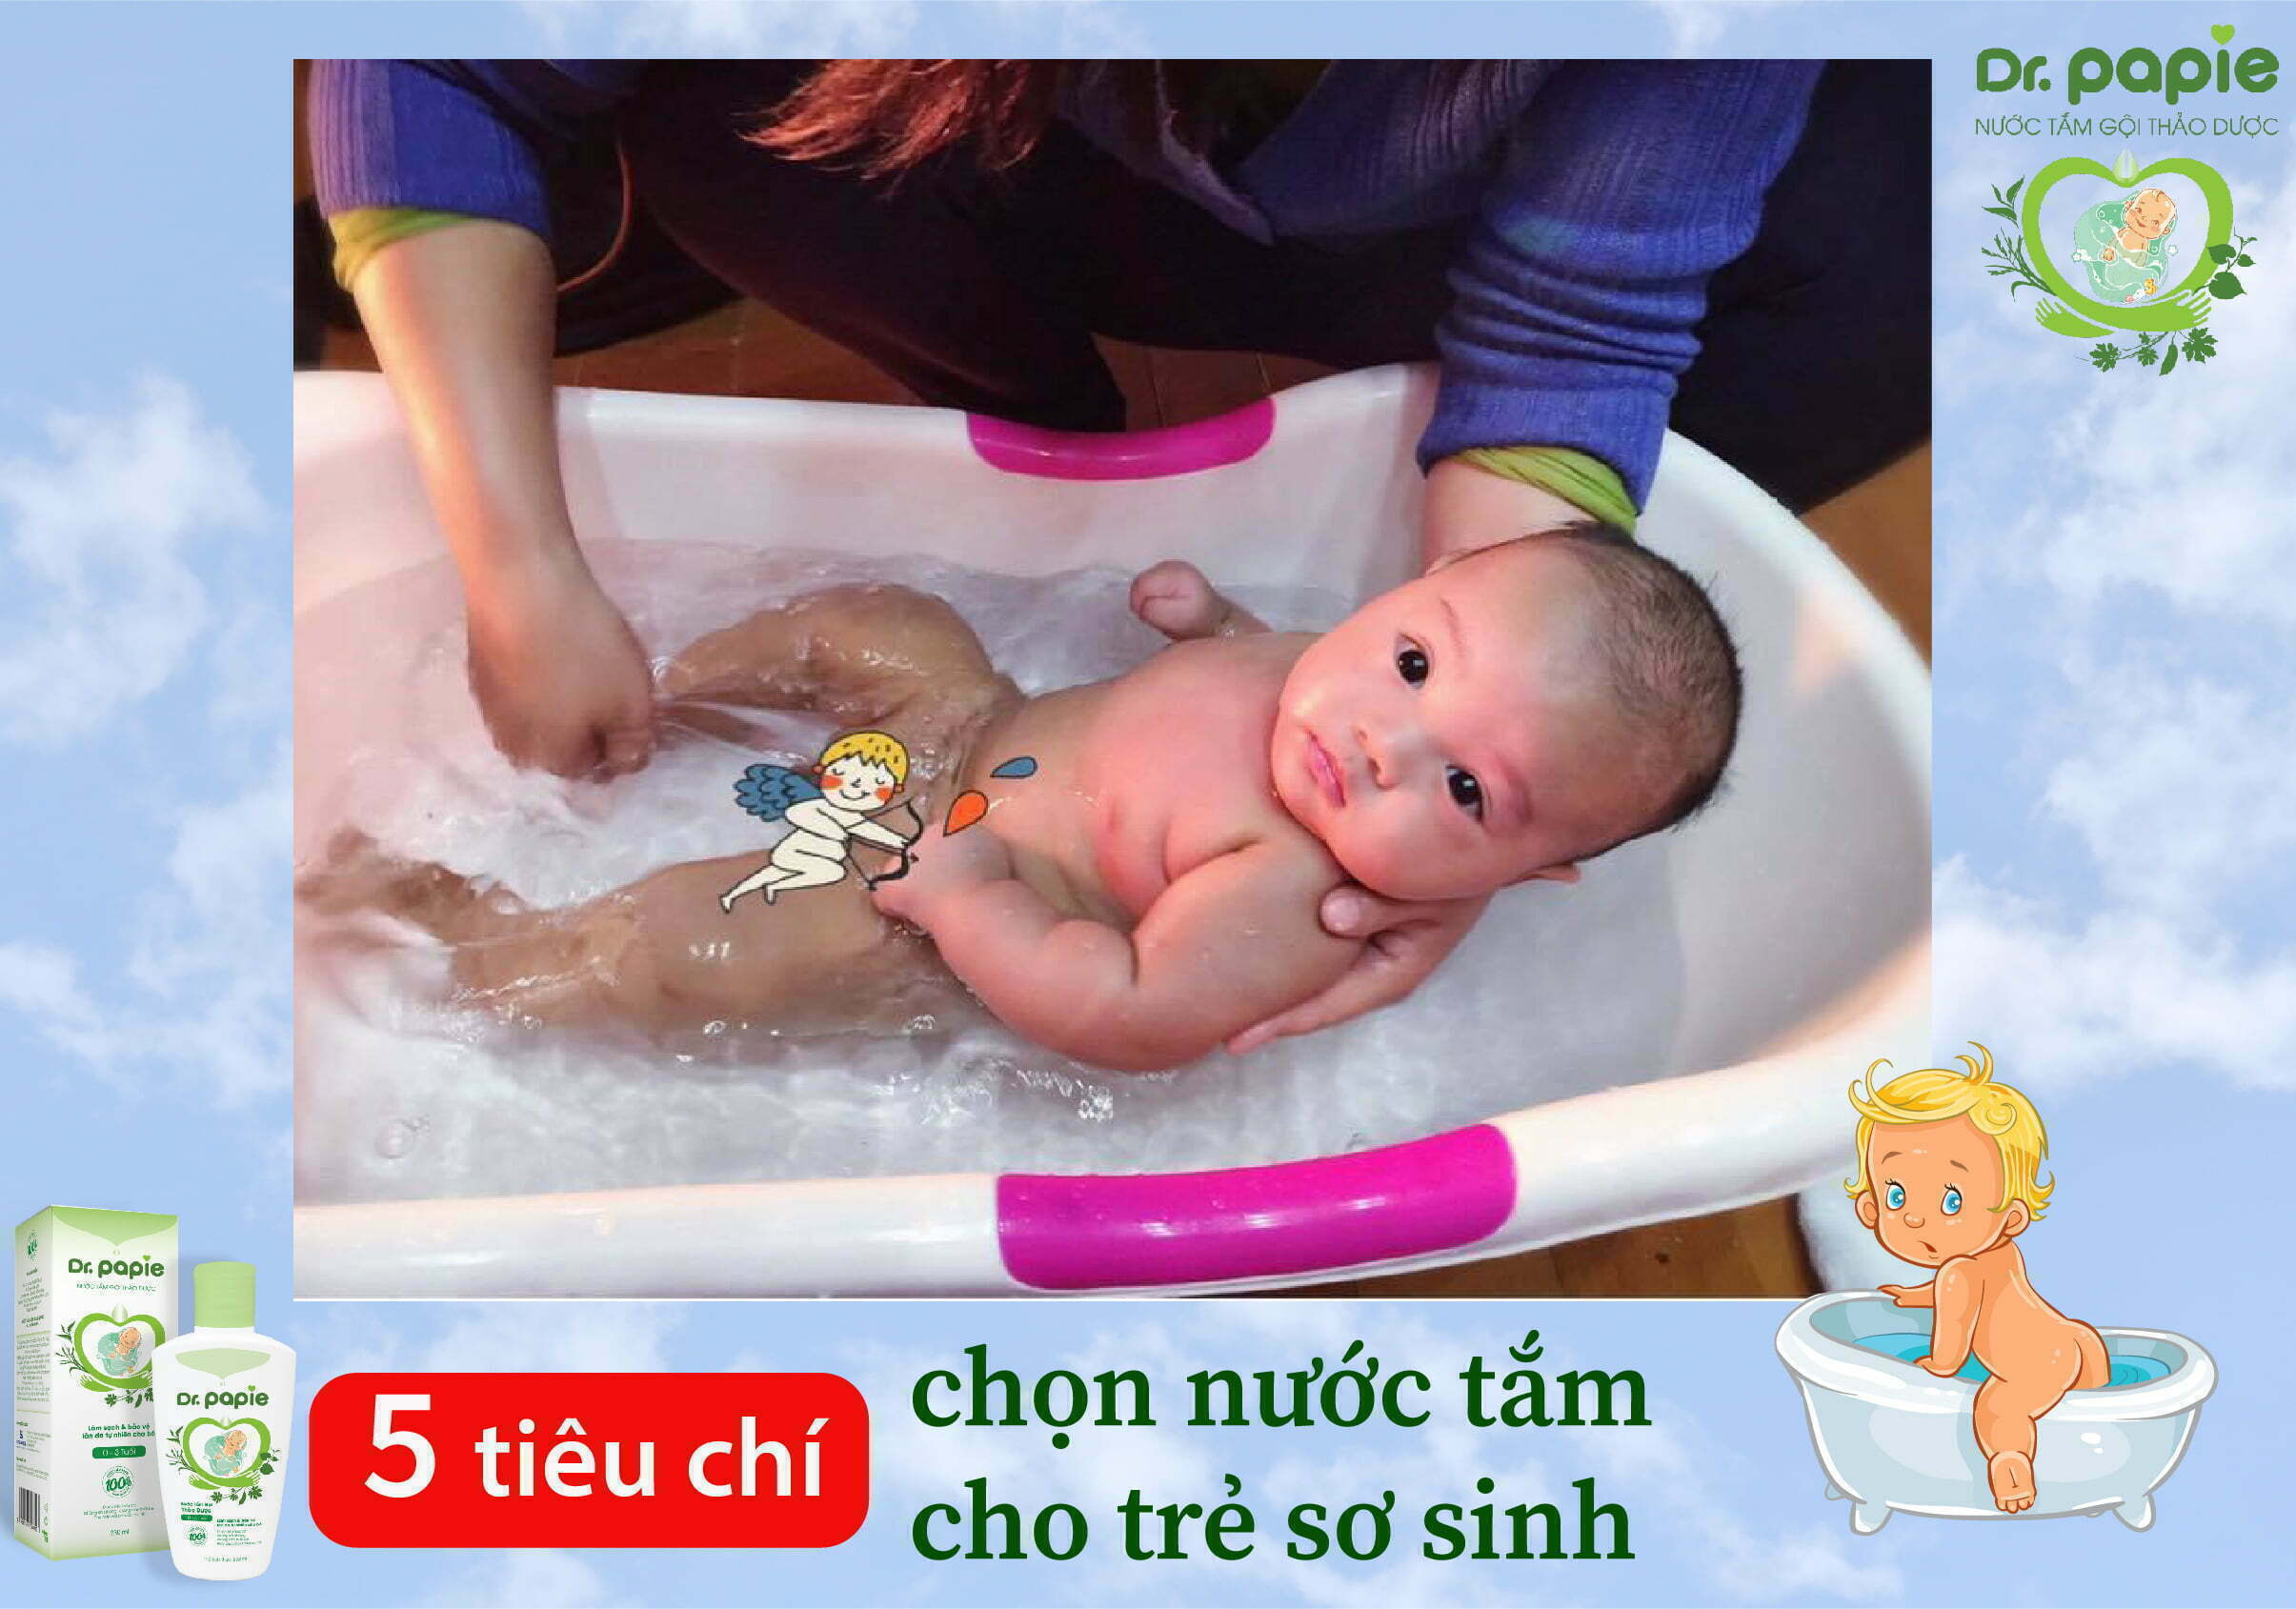 5 tiêu chí chọn nước tắm cho trẻ sơ sinh mẹ cần biết